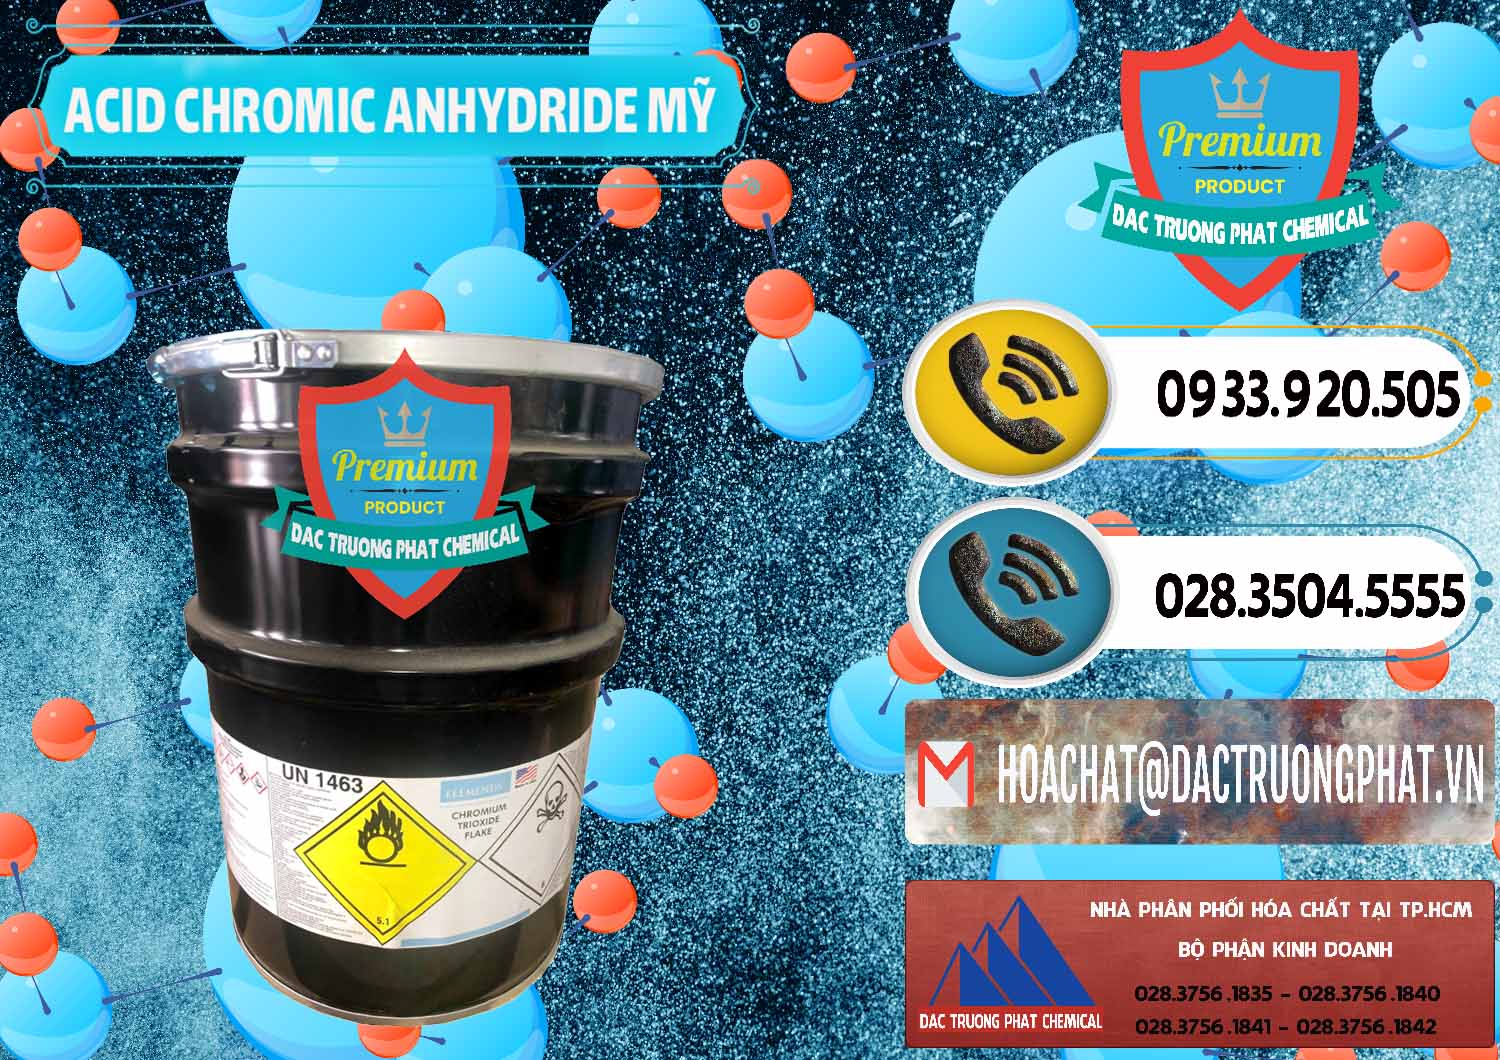 Cty chuyên kinh doanh _ bán Acid Chromic Anhydride - Cromic CRO3 USA Mỹ - 0364 - Nơi phân phối - kinh doanh hóa chất tại TP.HCM - hoachatdetnhuom.vn